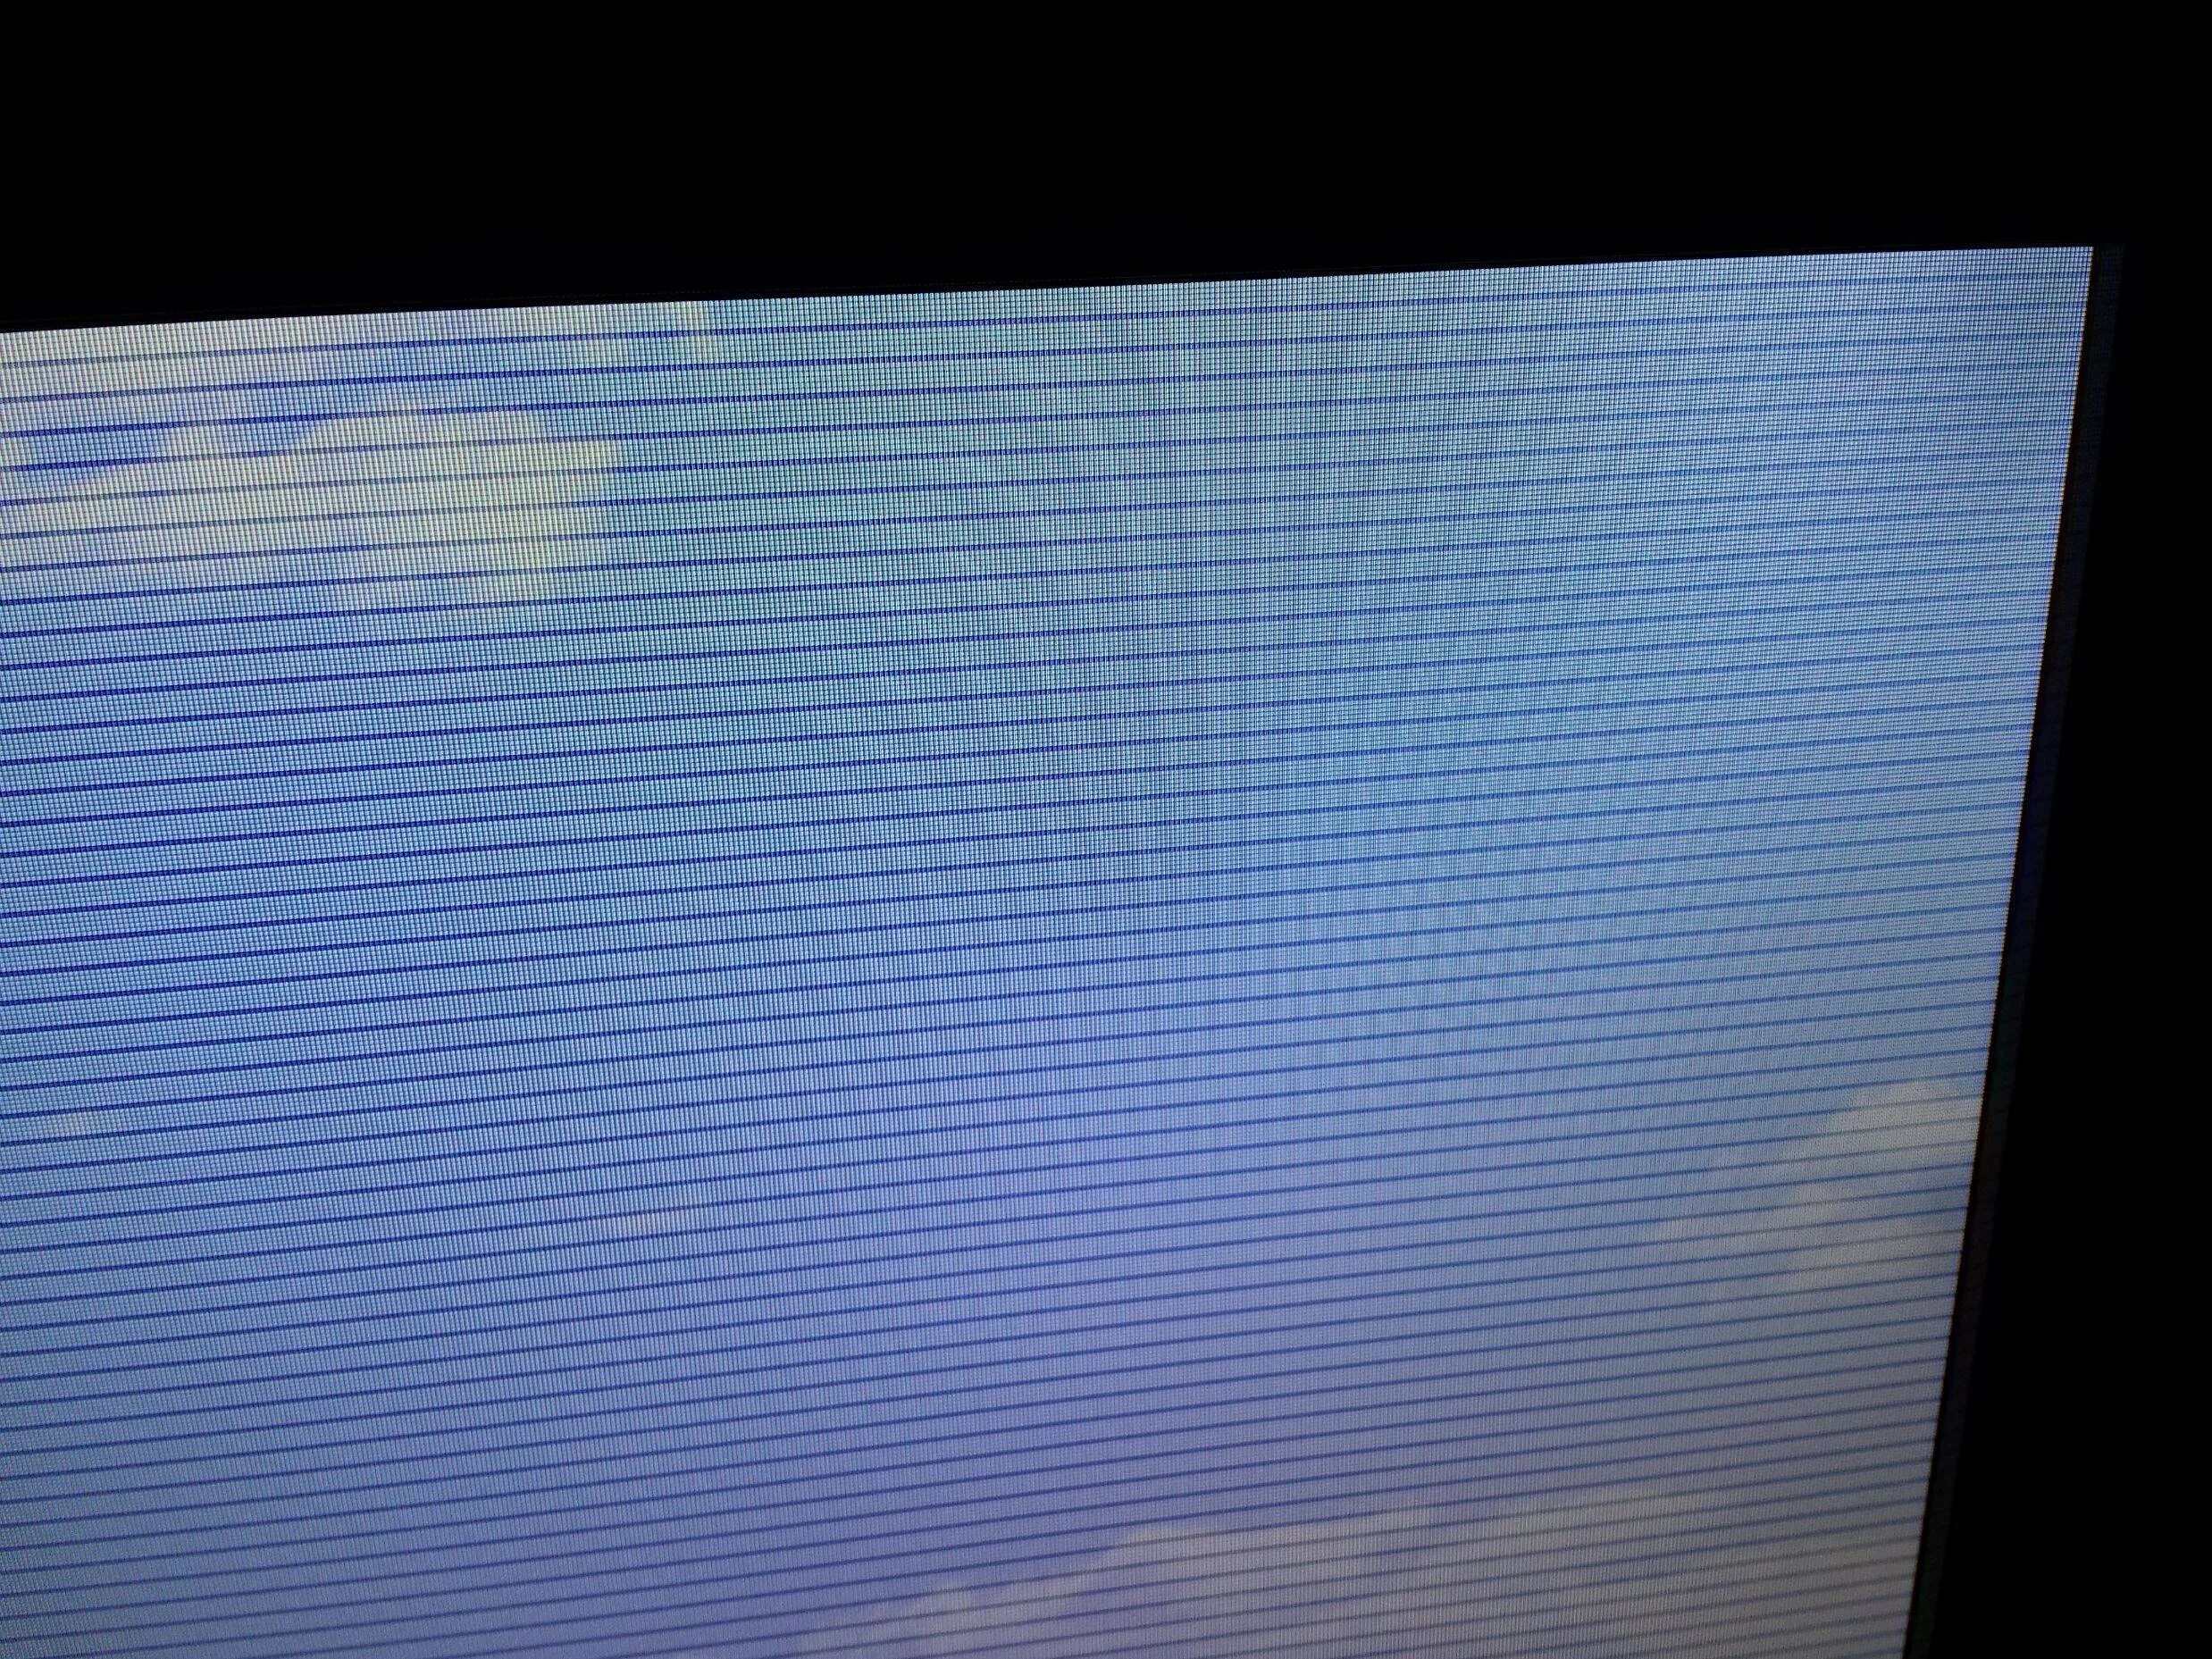 Телевизор Филипс горизонтальные полосы на экране. Телевизор самсунг рябит экран. Lta400hm15 горизонтальные полосы. Вертикальные полосы на экране телевизора LG 32ln541u.